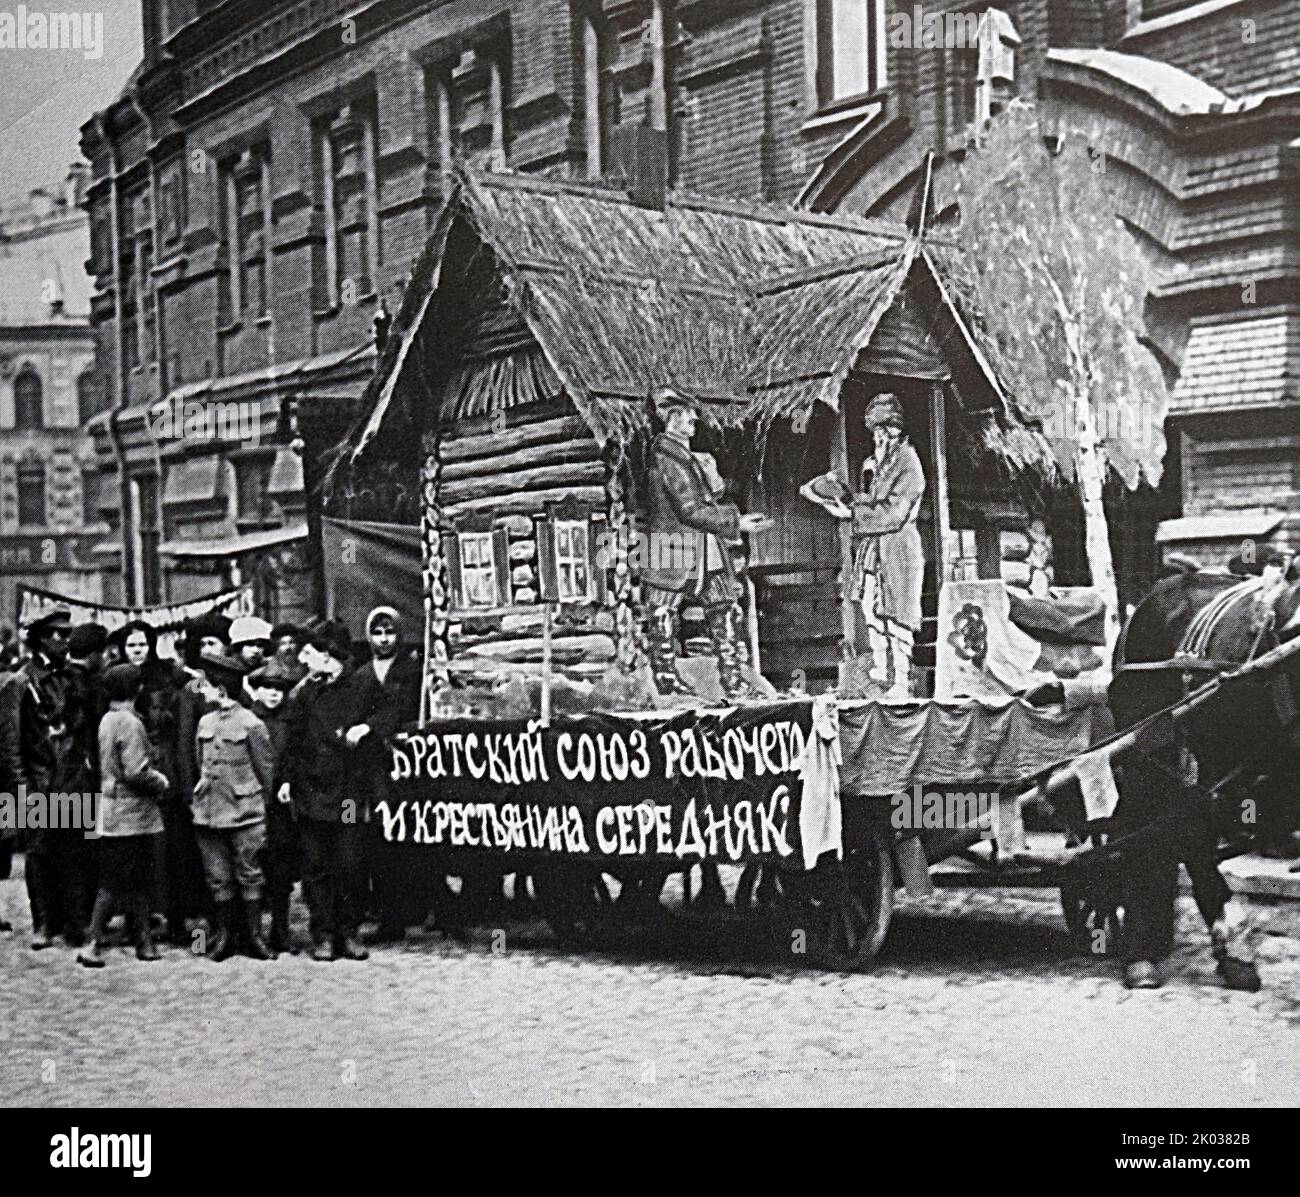 Carrozza di agitazione con un make-up di una capanna sul tema 'collegamento tra la città e la campagna' in una manifestazione a Mosca il 1 maggio 1919. Foto Stock